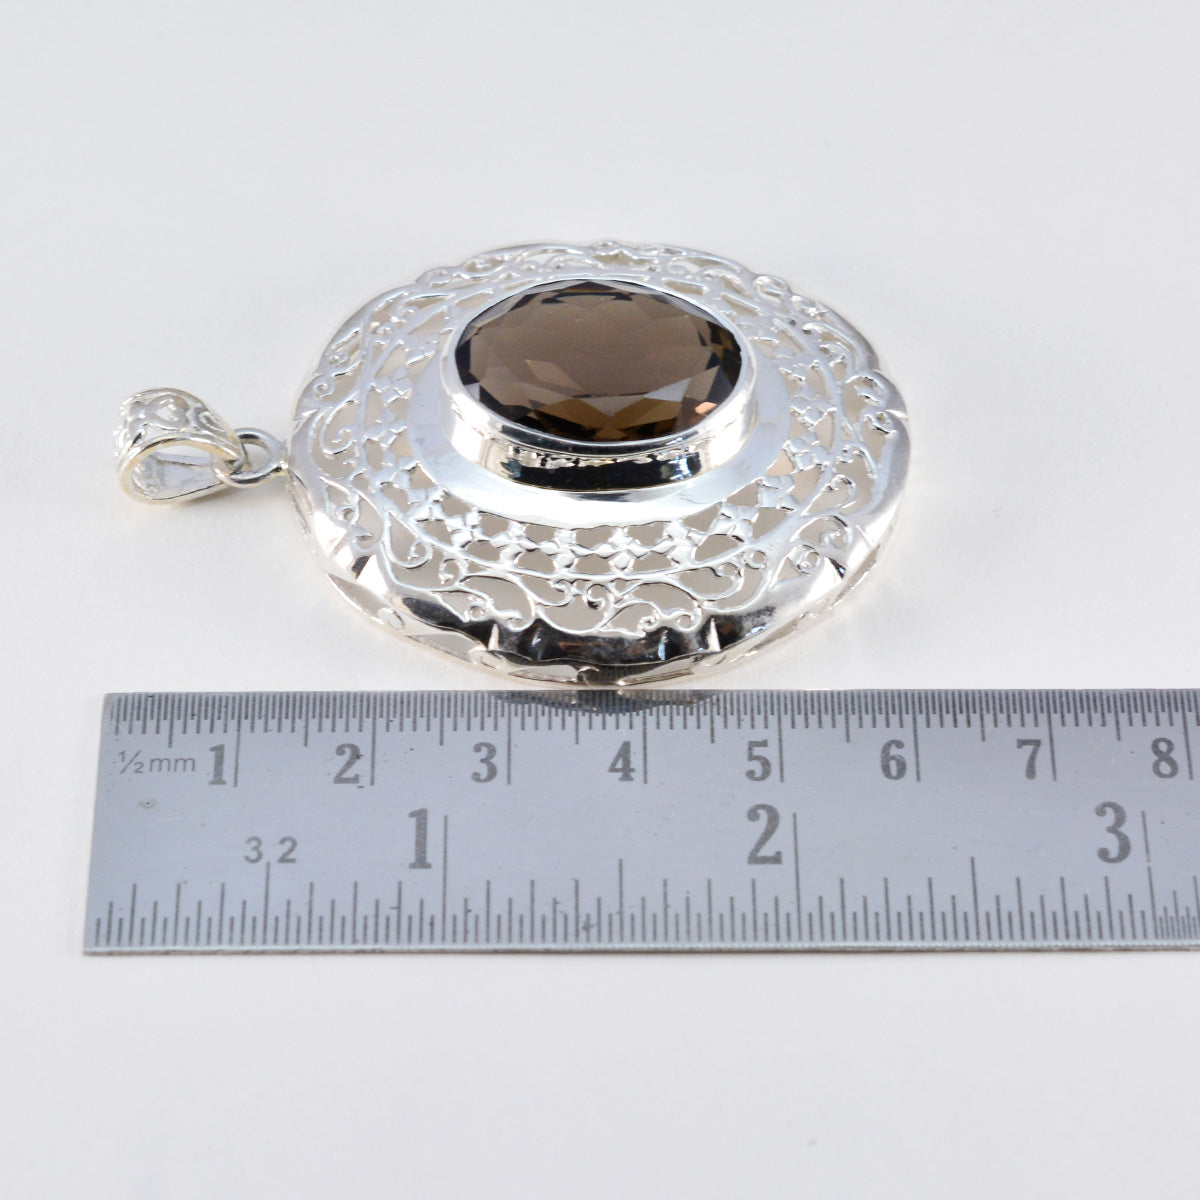 Riyo aantrekkelijke edelstenen ovale gefacetteerde bruine rookkwarts massief zilveren hanger cadeau voor goede vrijdag